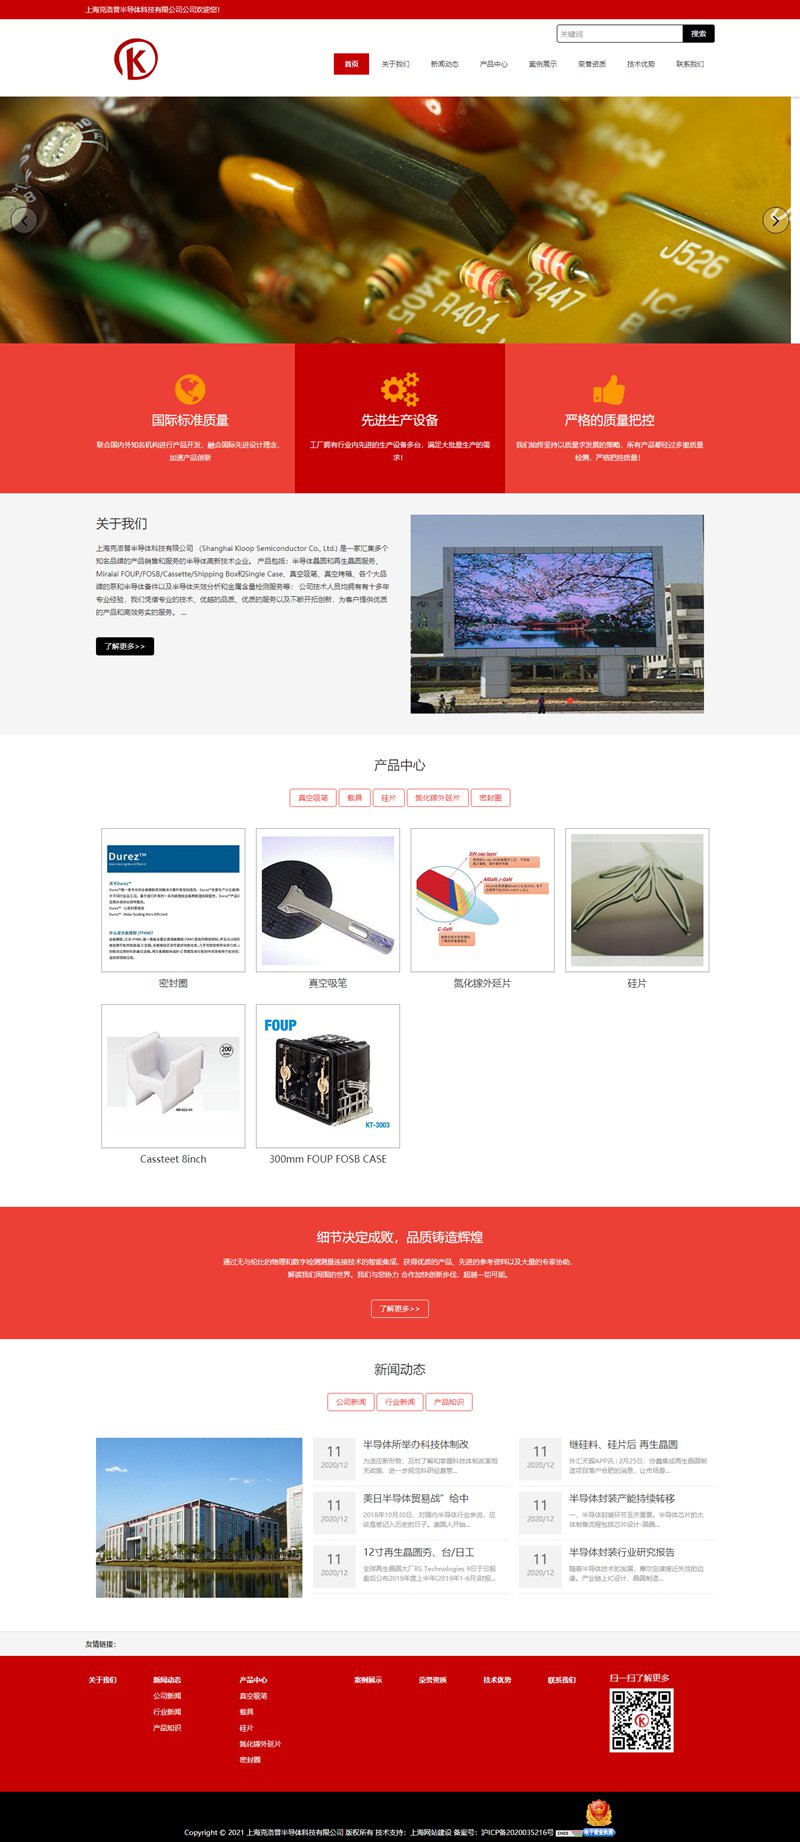 上海克洛普半导体科技有限公司网站制作效果.jpg